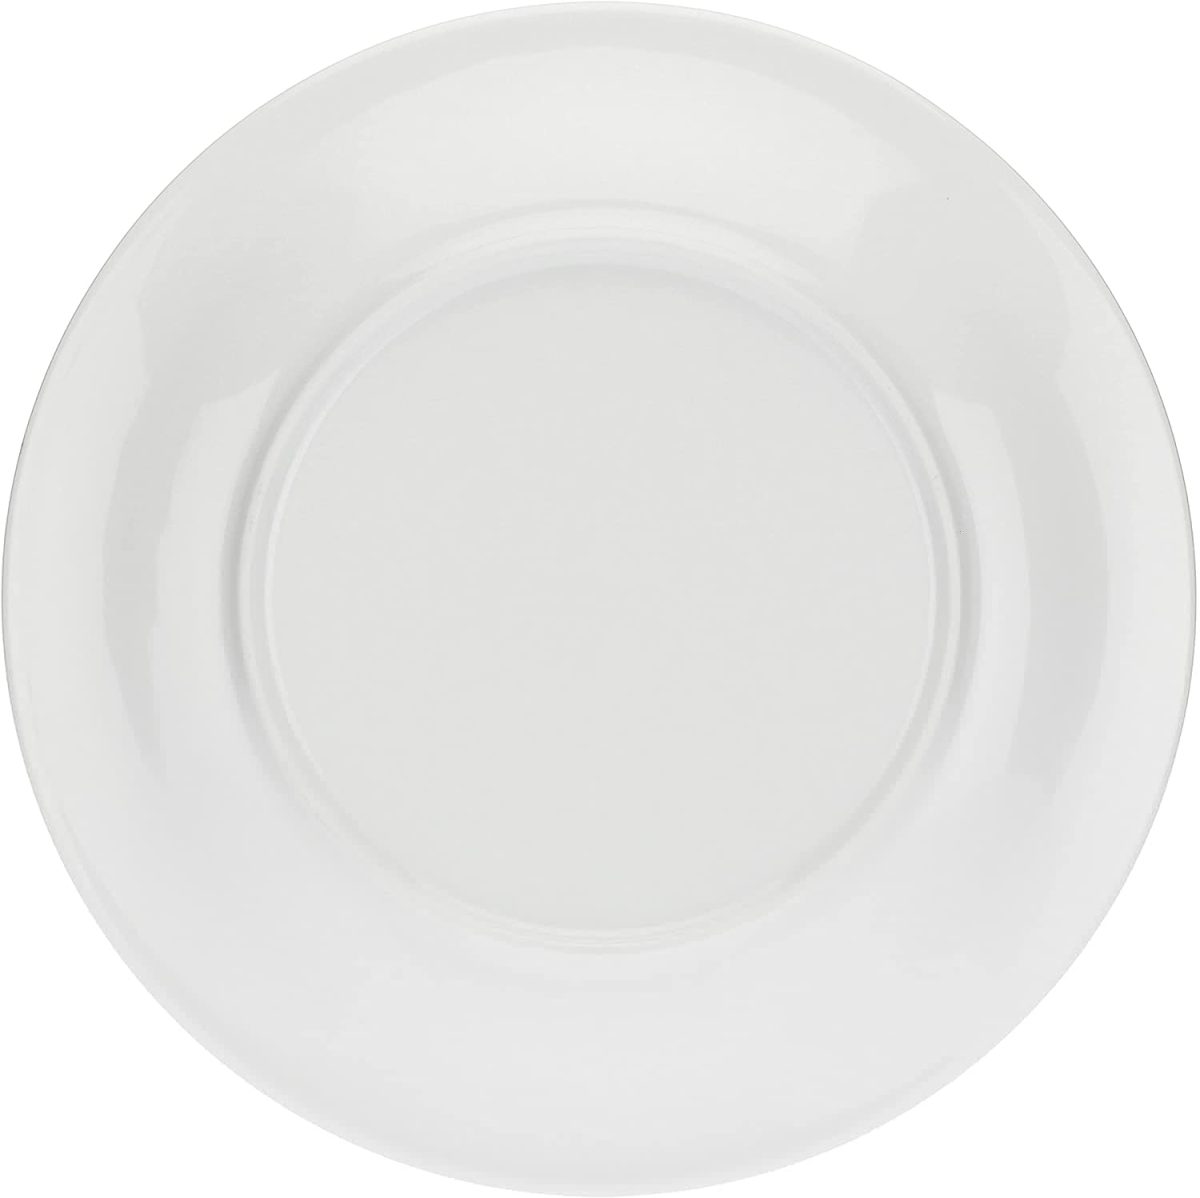 Porcellana Ø 31,9 cm; h 2,2 cm THUN Idea Regalo Cucina Linea Yucatan Piatto Multiuso Formato Grande per la tavola